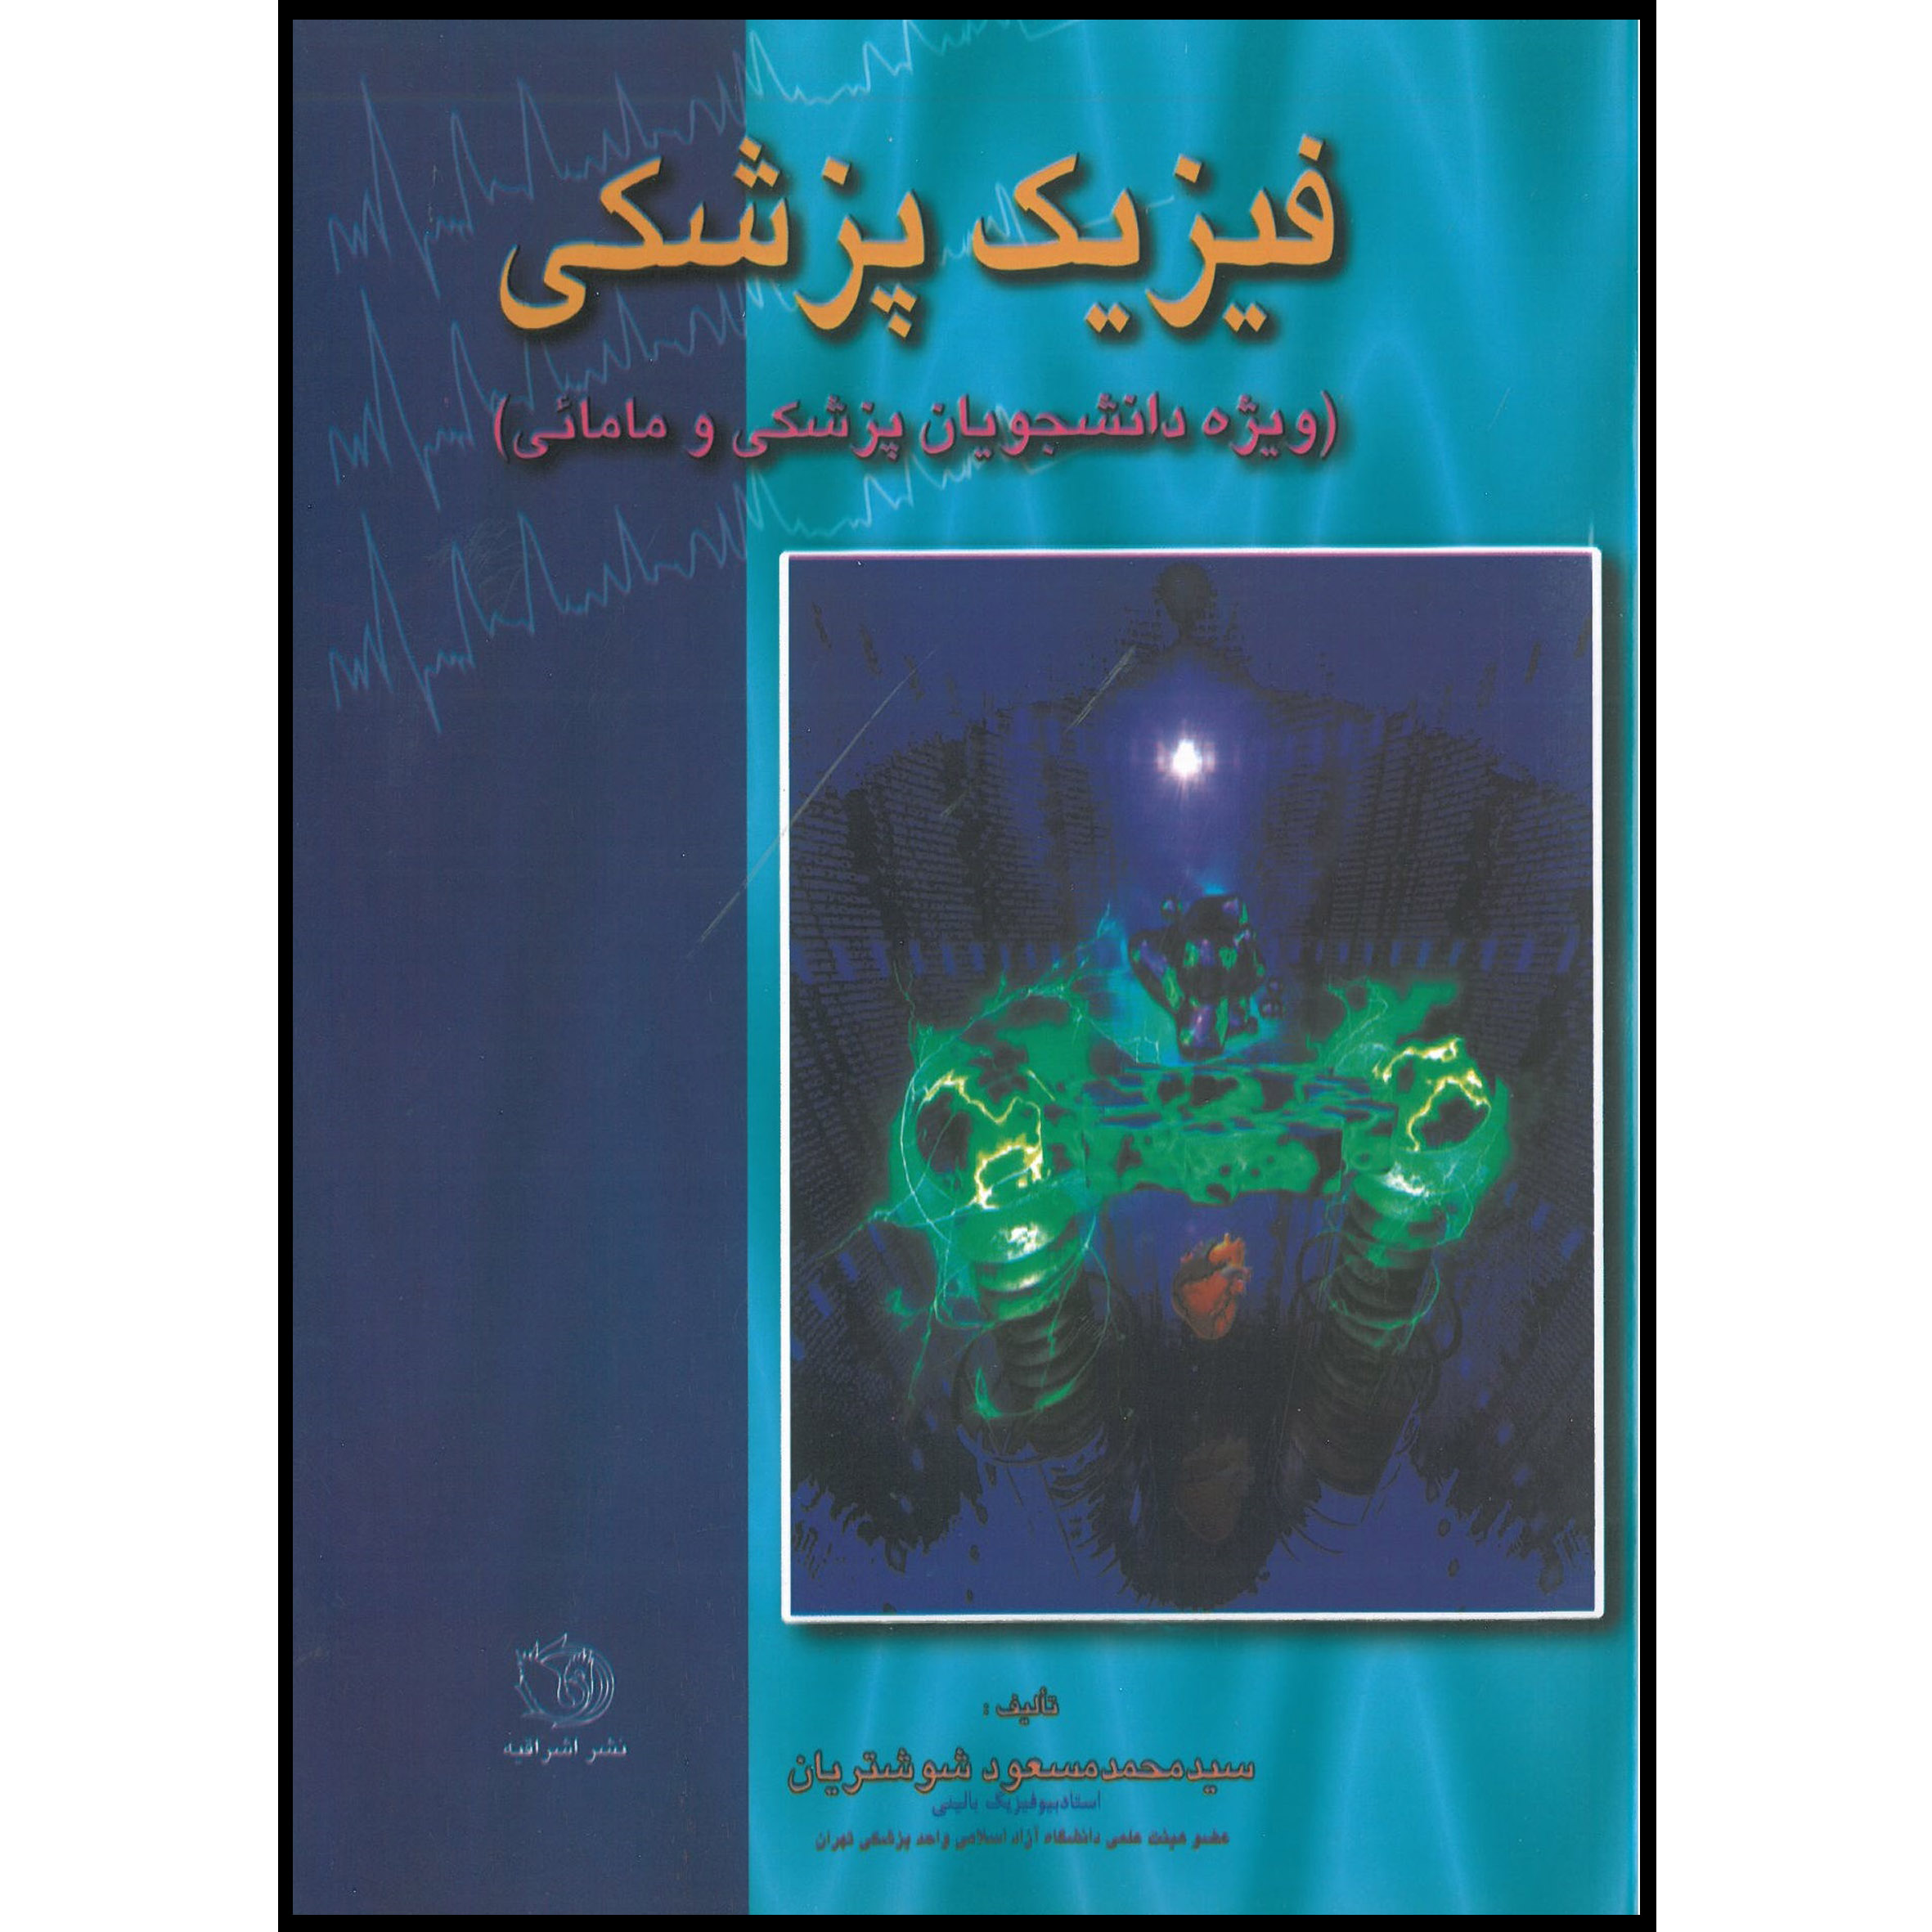 کتاب فیزیک پزشکی ویژه دانشجویان پزشکی و مامایی اثر دکتر محمد مسعود شوشتریان انتشارات اشراقیه